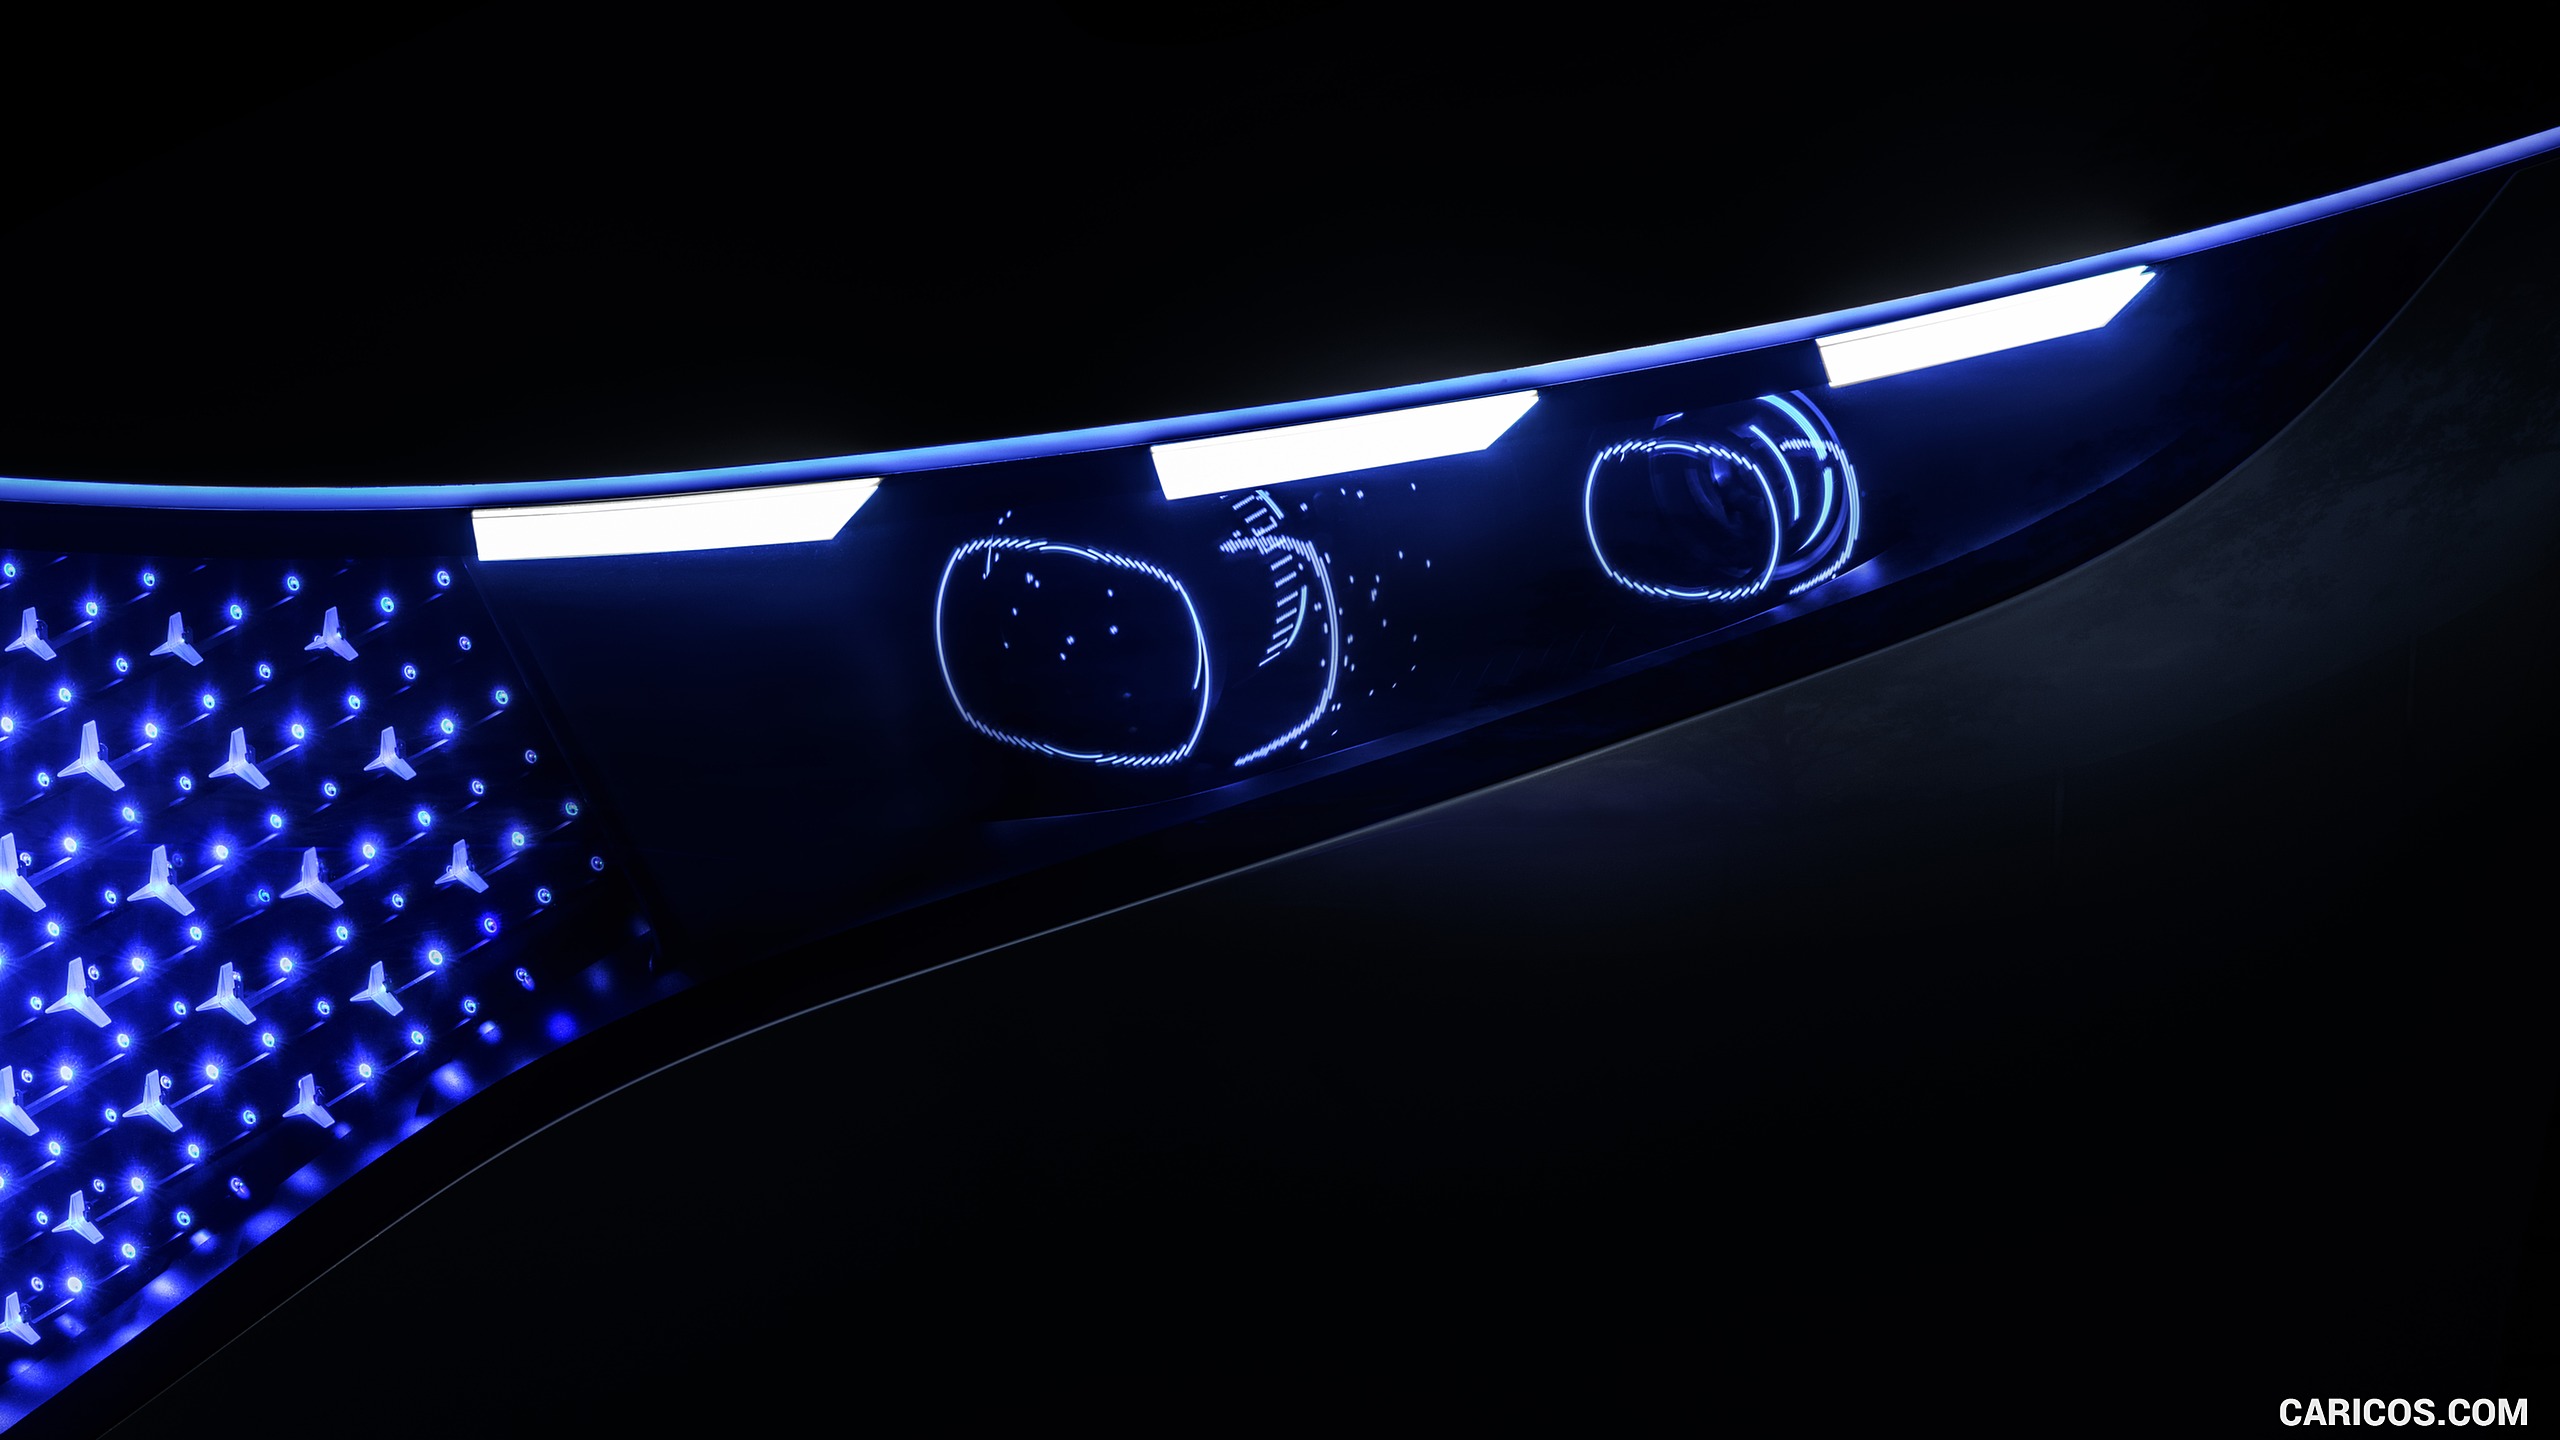 2019 Mercedes-Benz Vision EQS Concept - Headlight, #34 of 58